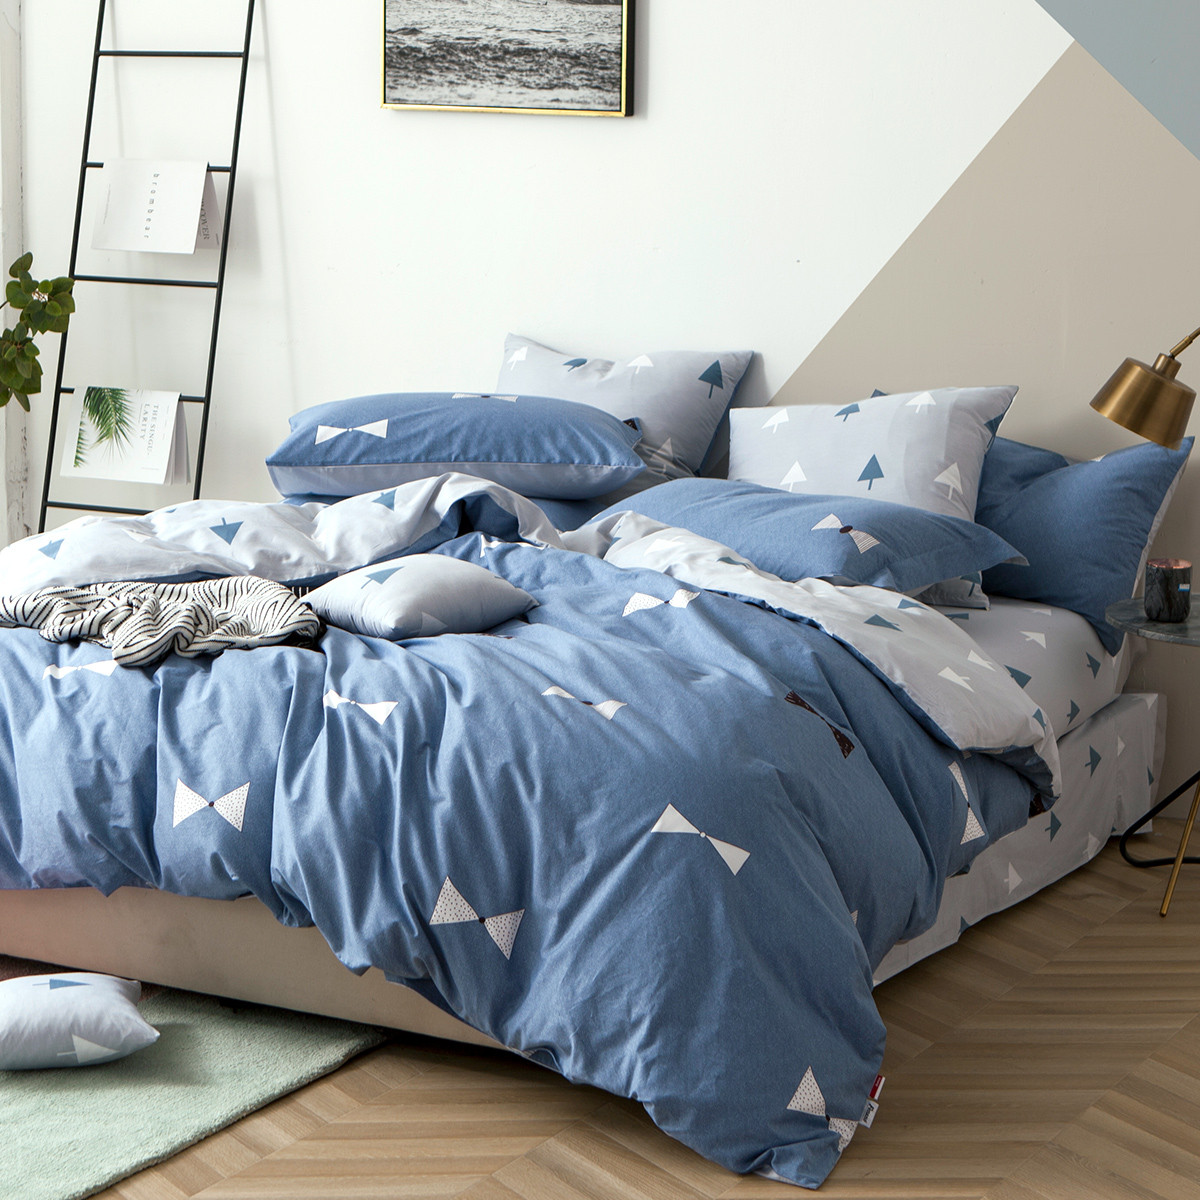 簡約北歐風宿舍床單四件套 質感親膚舒適 溫暖保暖